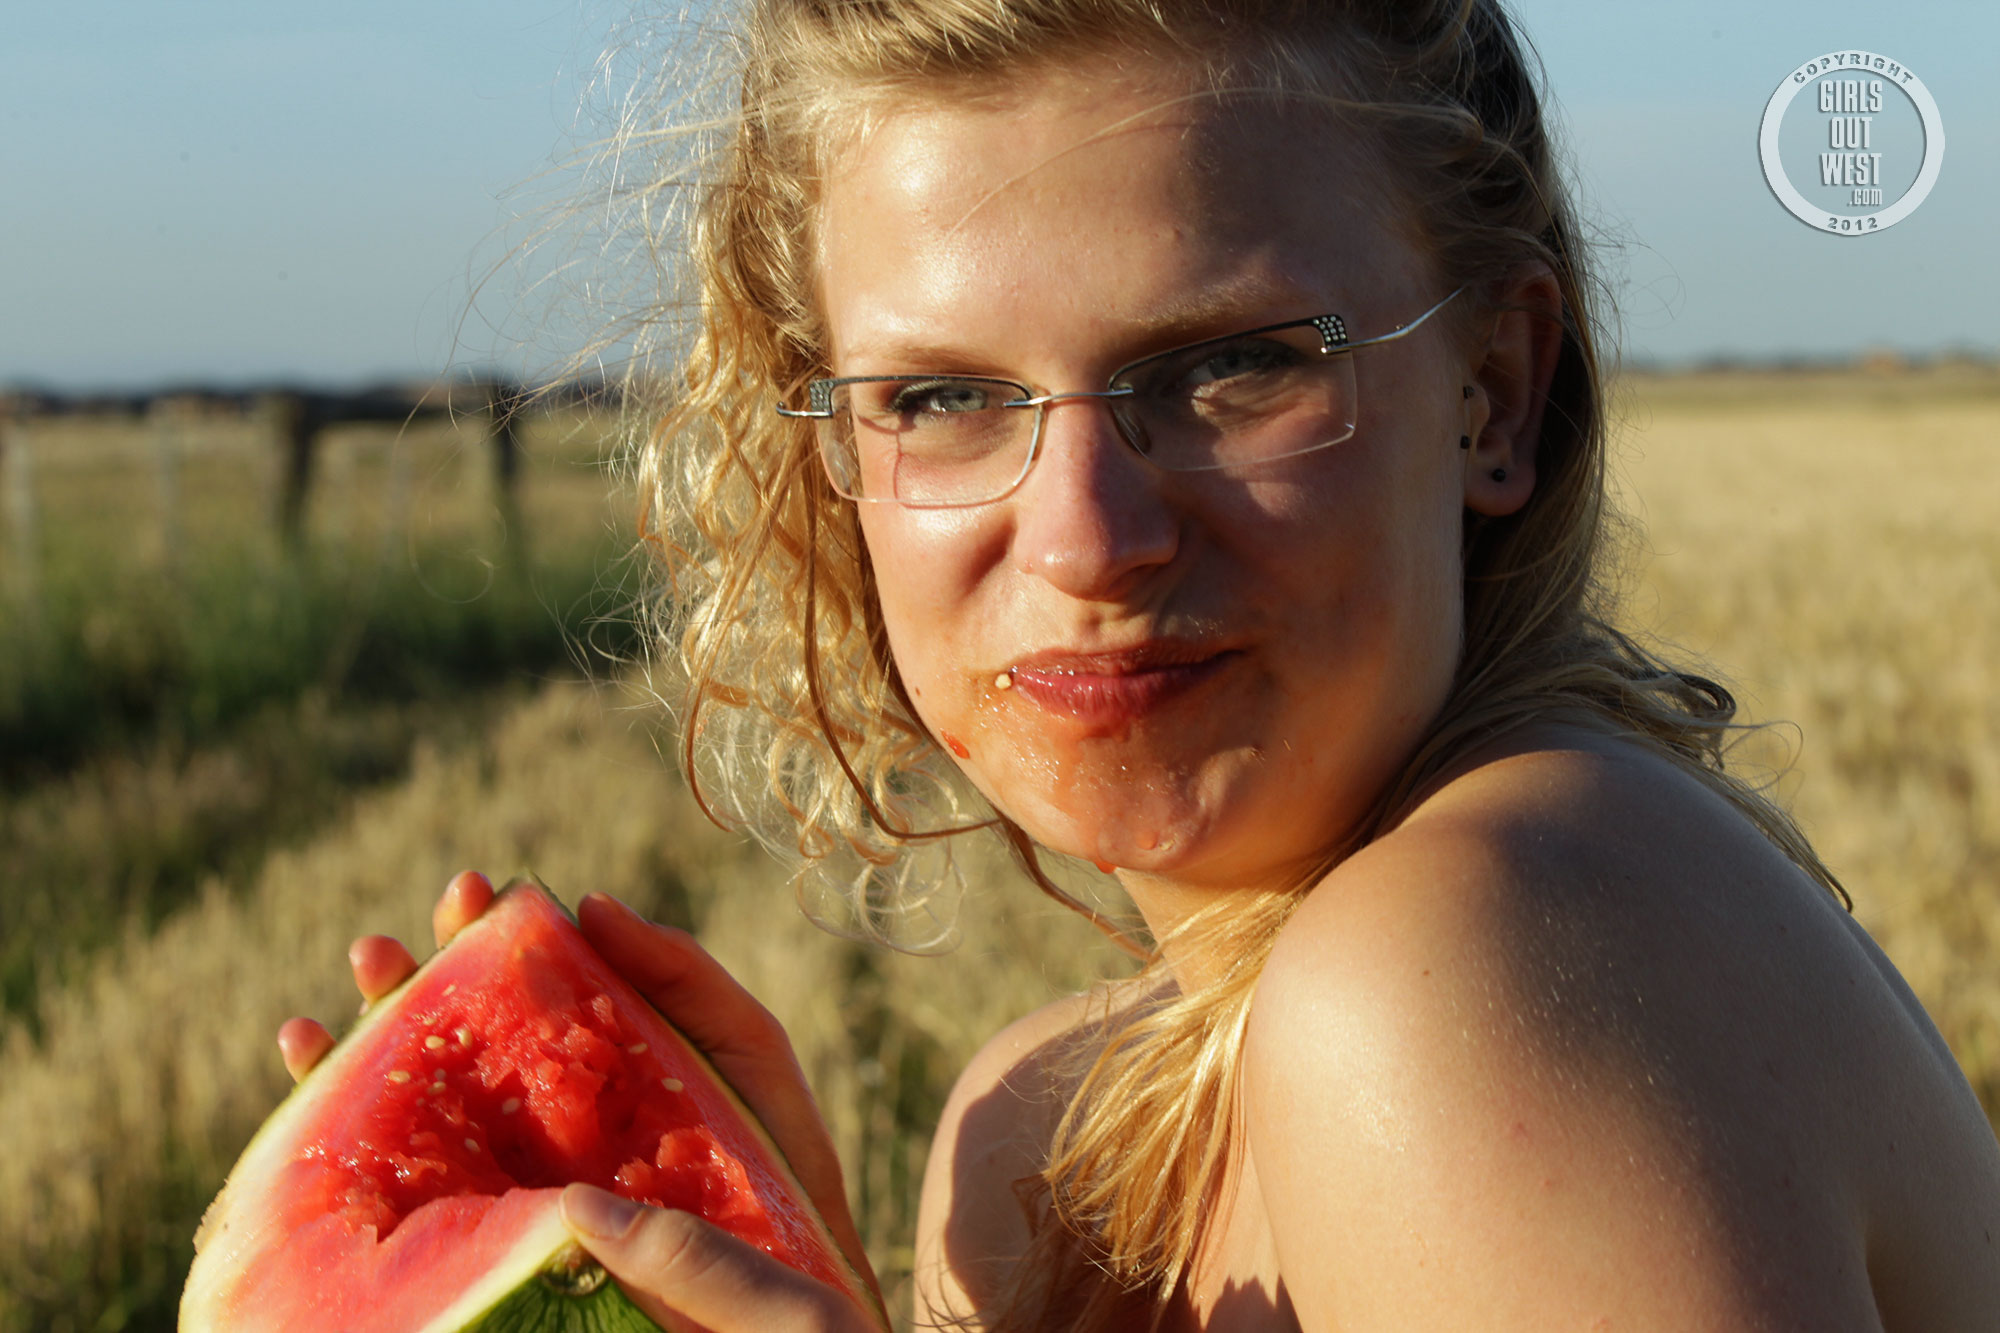 wpid-cute-australian-blonde-gretel-has-fun-eating-a-watermelon-in-the-nude-in-a-field15.jpg